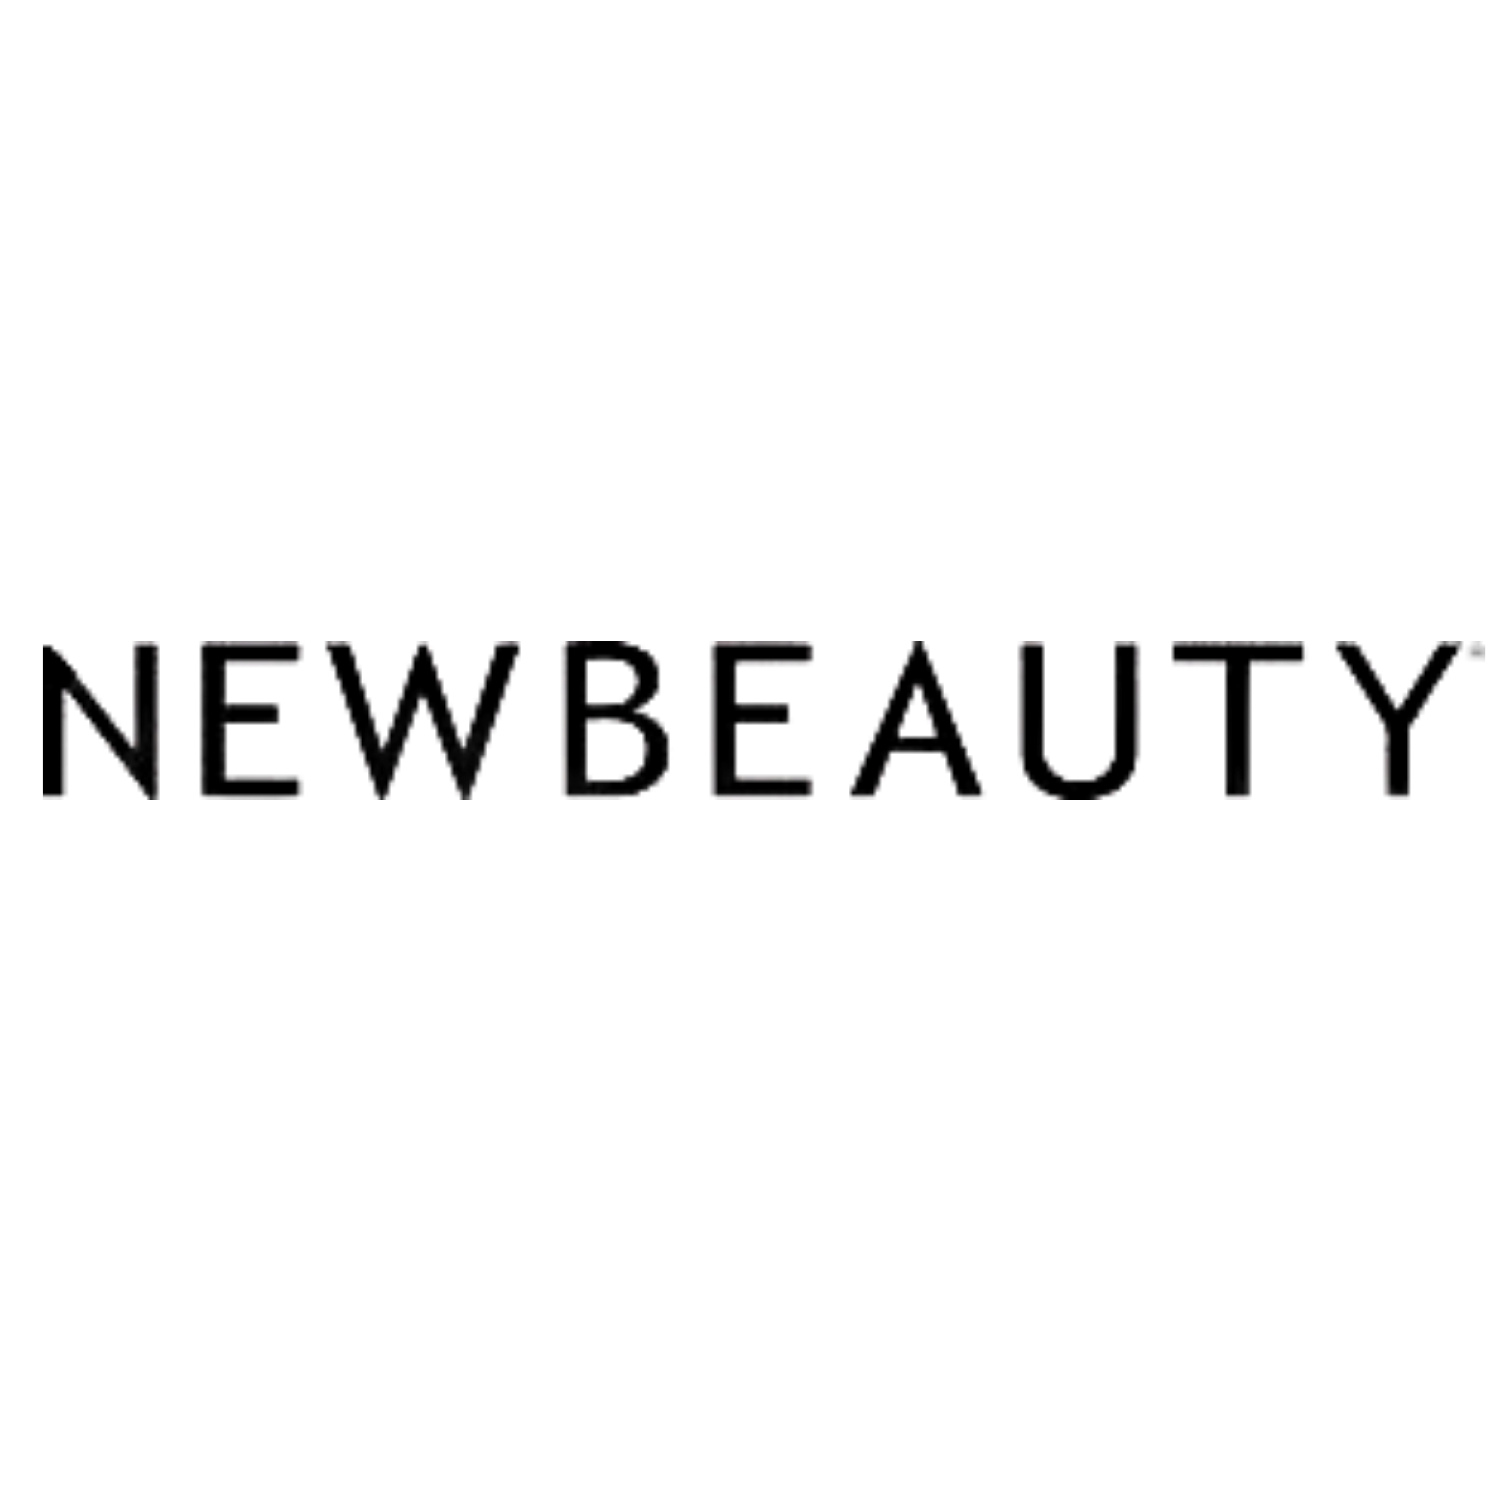 New Beauty logo